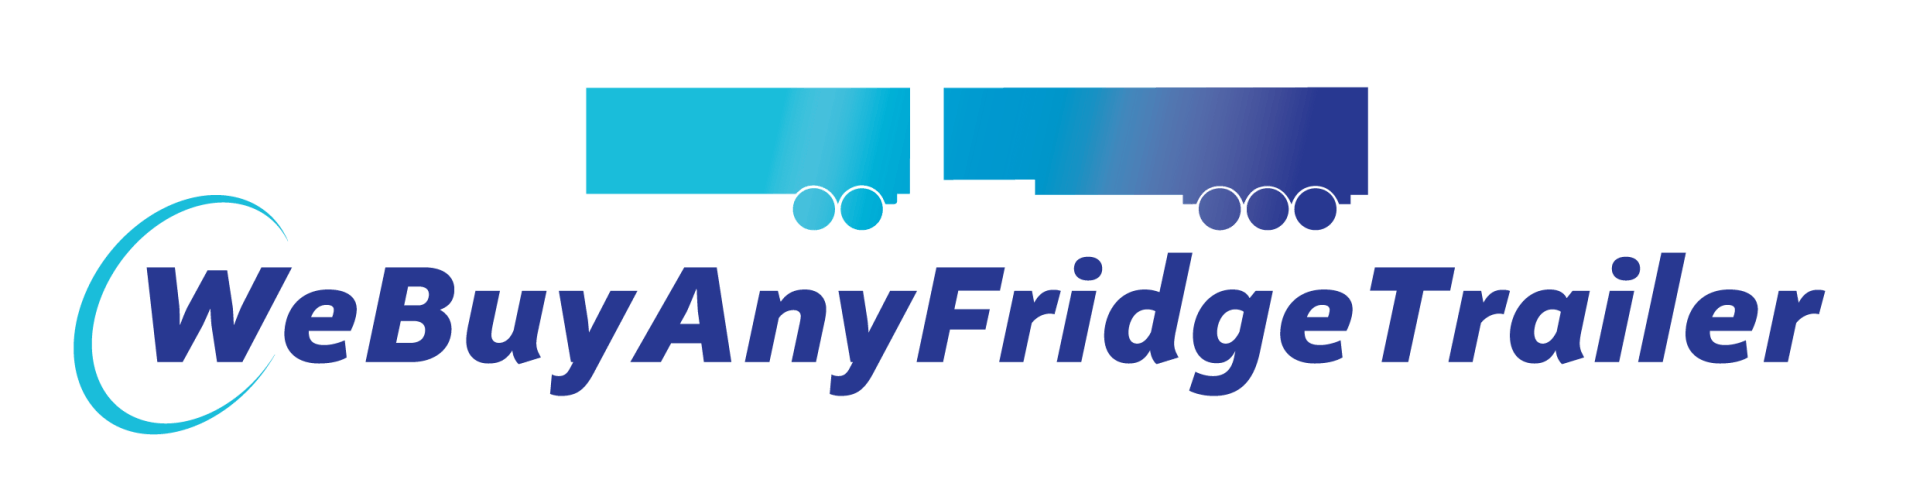 We Buy Any Fridge Trailer Logo